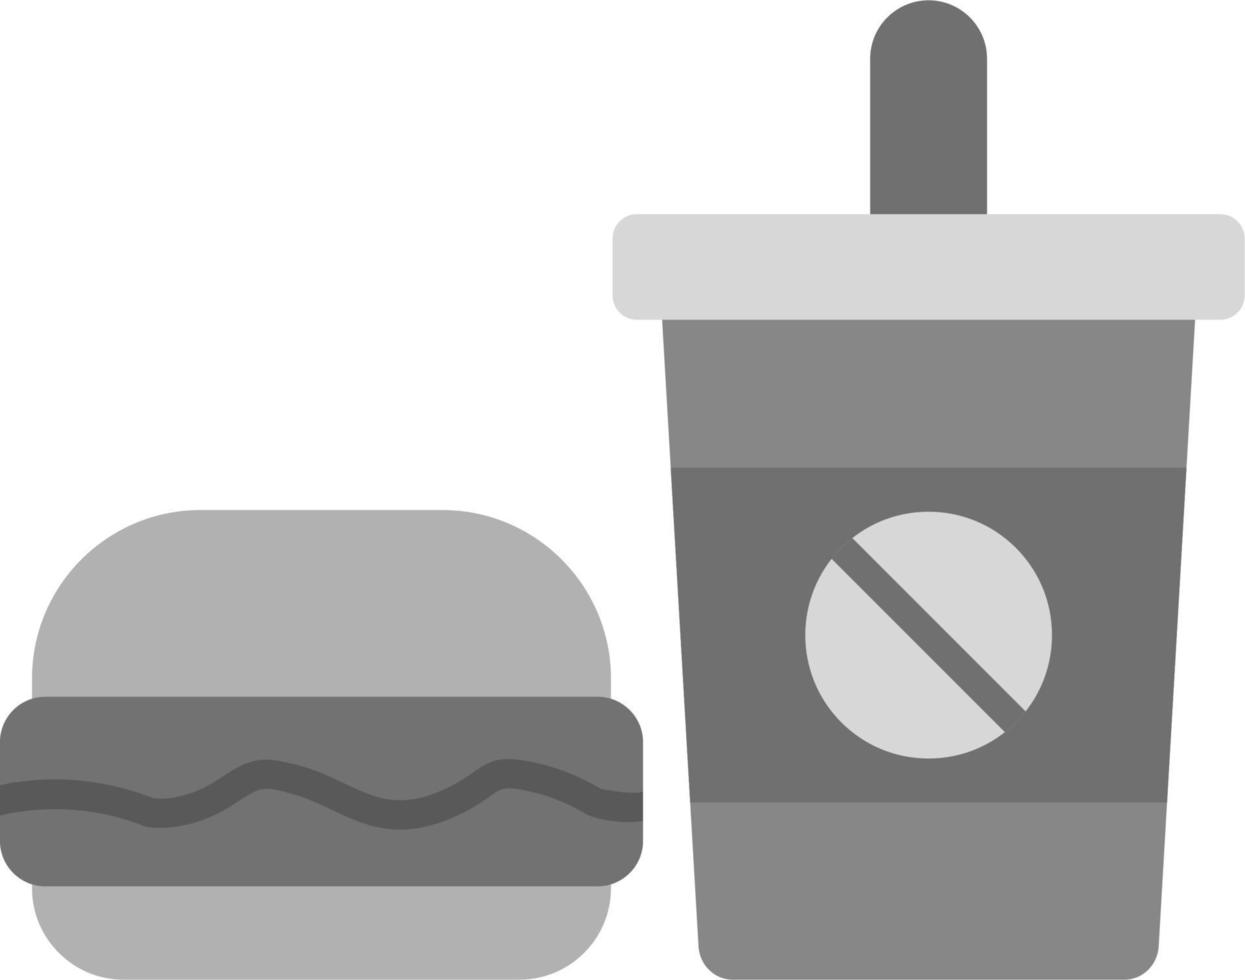 Fast-Food-Vektorsymbol vektor